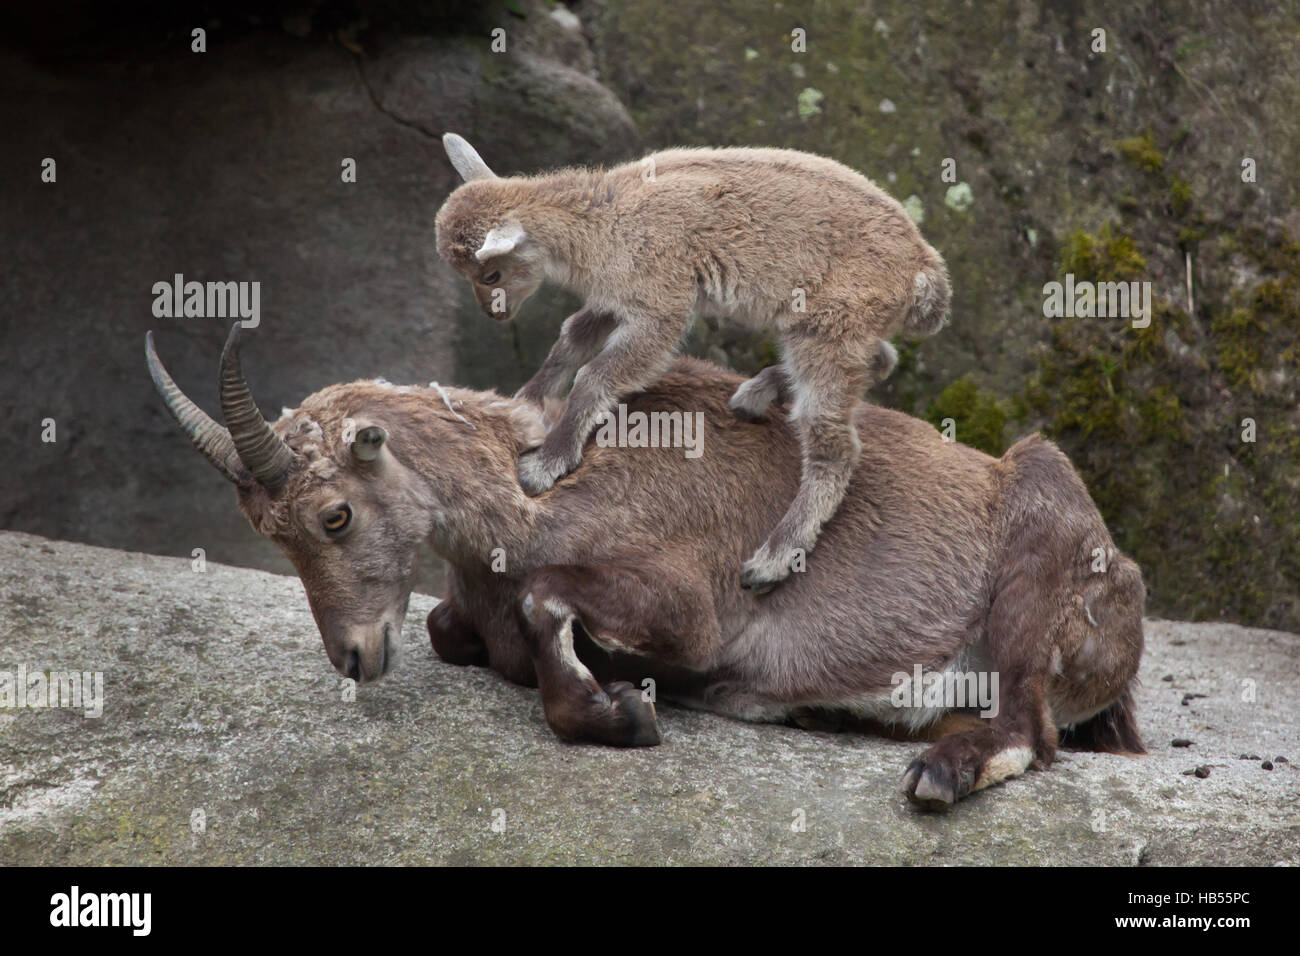 Alpensteinbock (Capra Ibex Ibex), auch bekannt als der Steinbock oder Bouquetin. Steinbock-Kind spielt mit seiner Mutter im Hellabrunn Zoo in München, Bayern, Deutschland Stockfoto